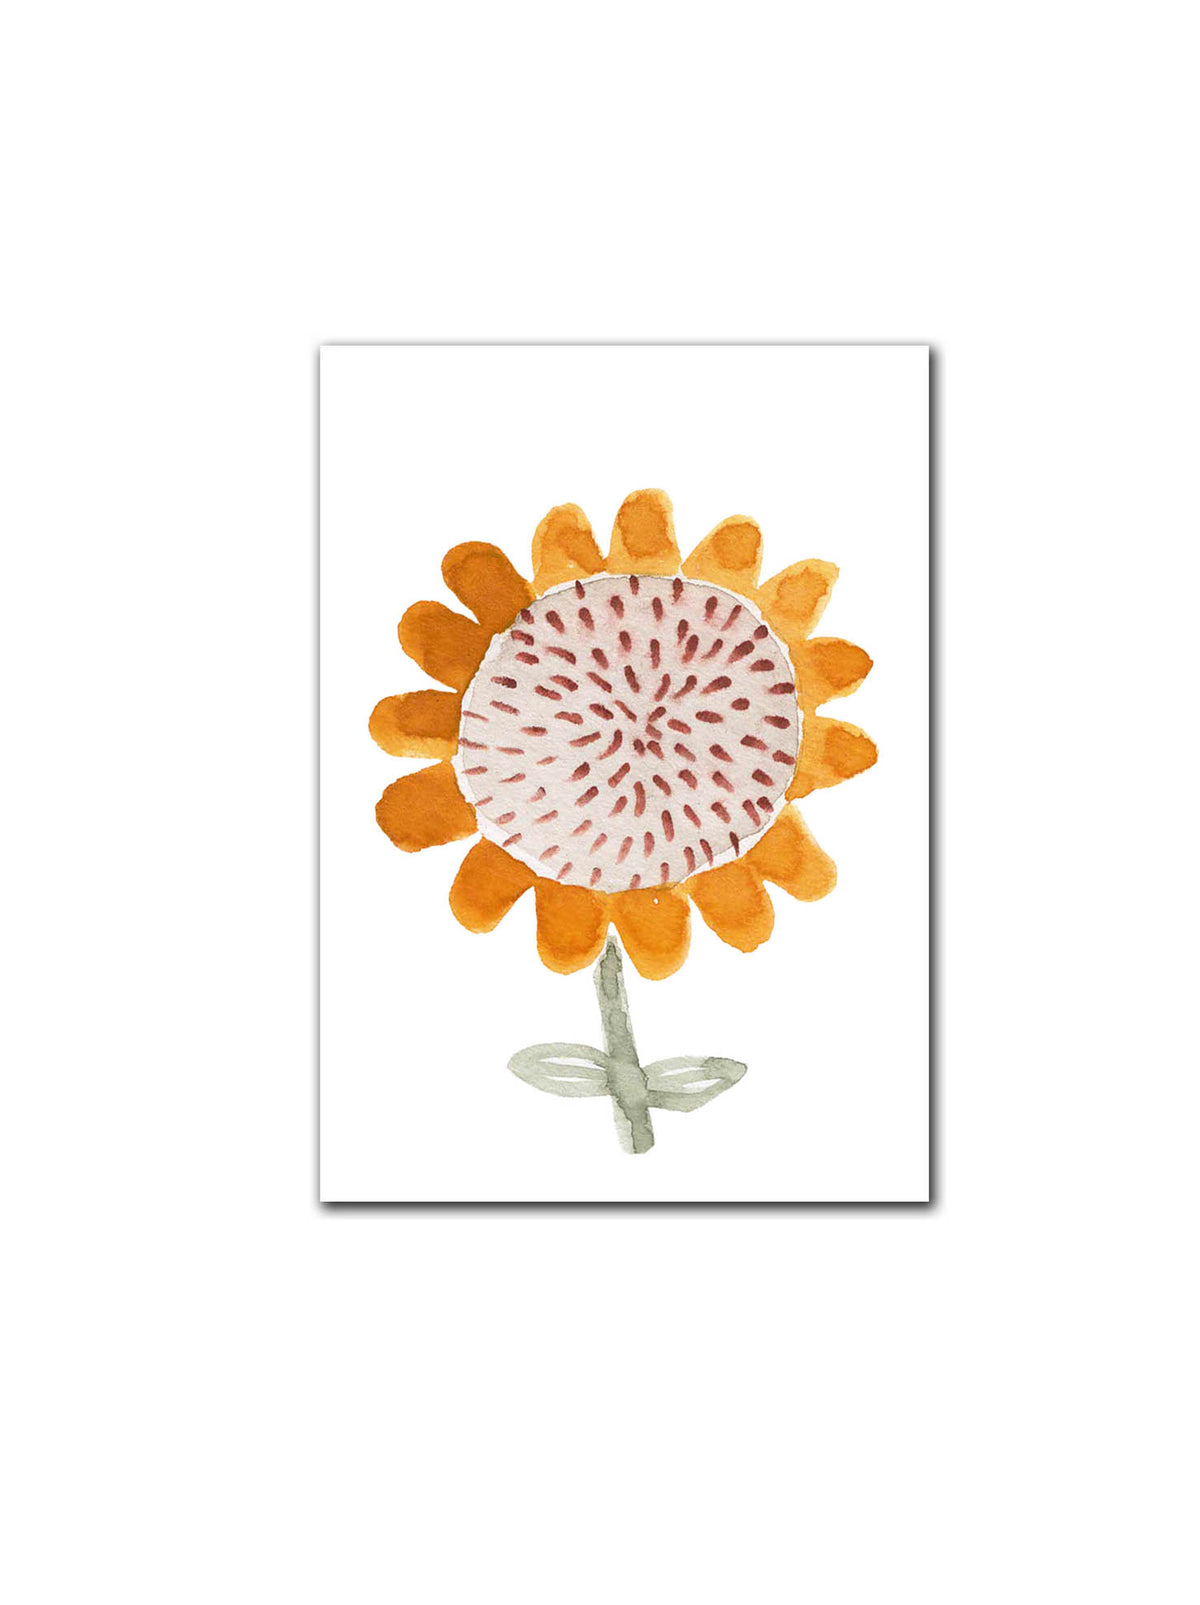 Postkarte "Sonnenblume"